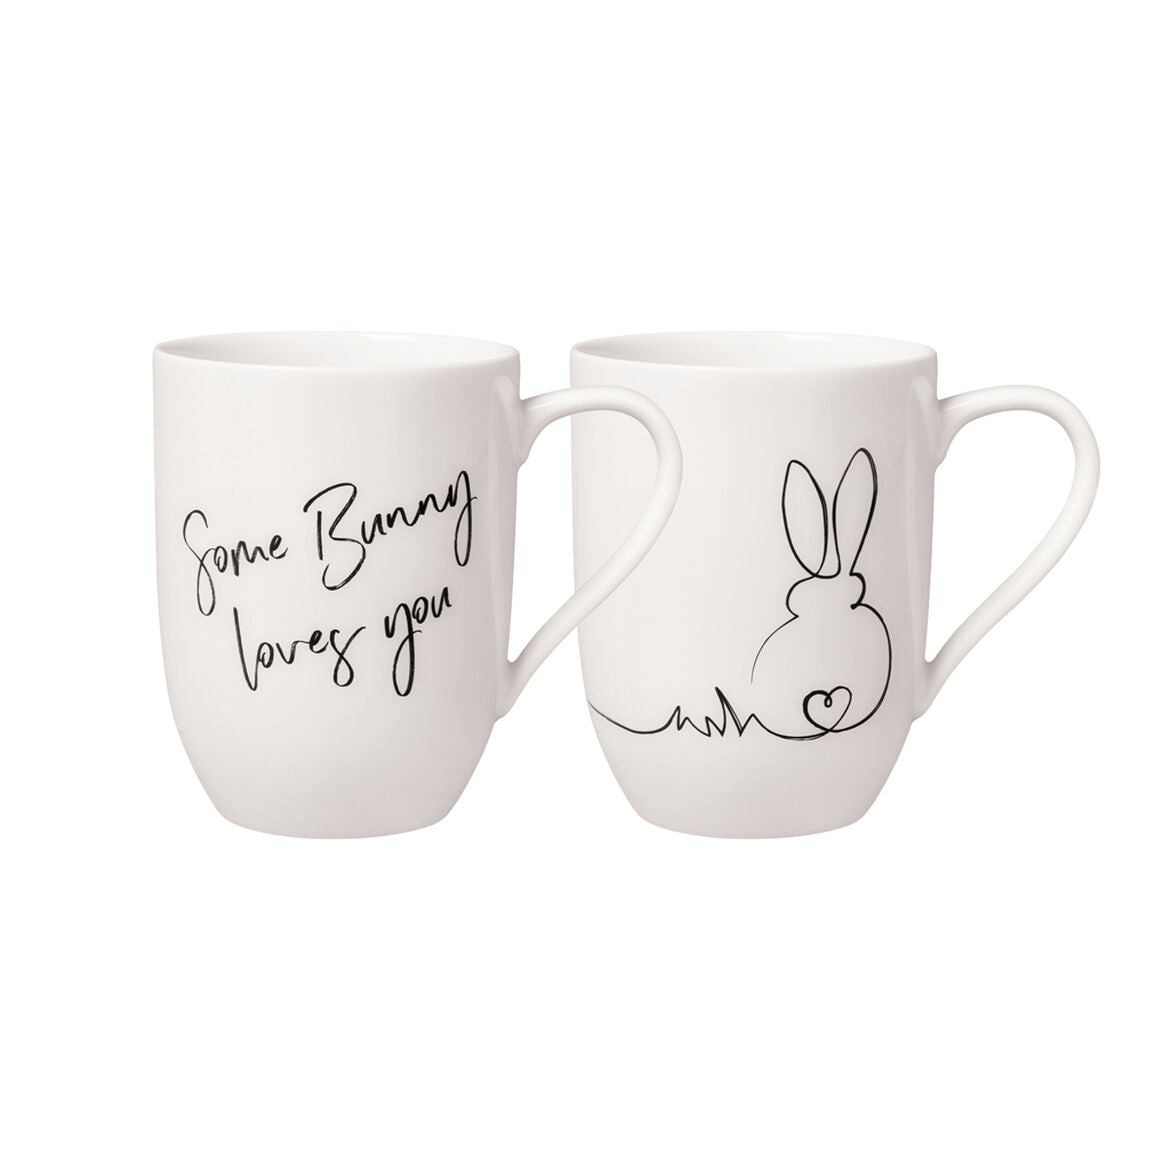 Villeroy and Boch Statement Mug set of 2 Easter Bunny